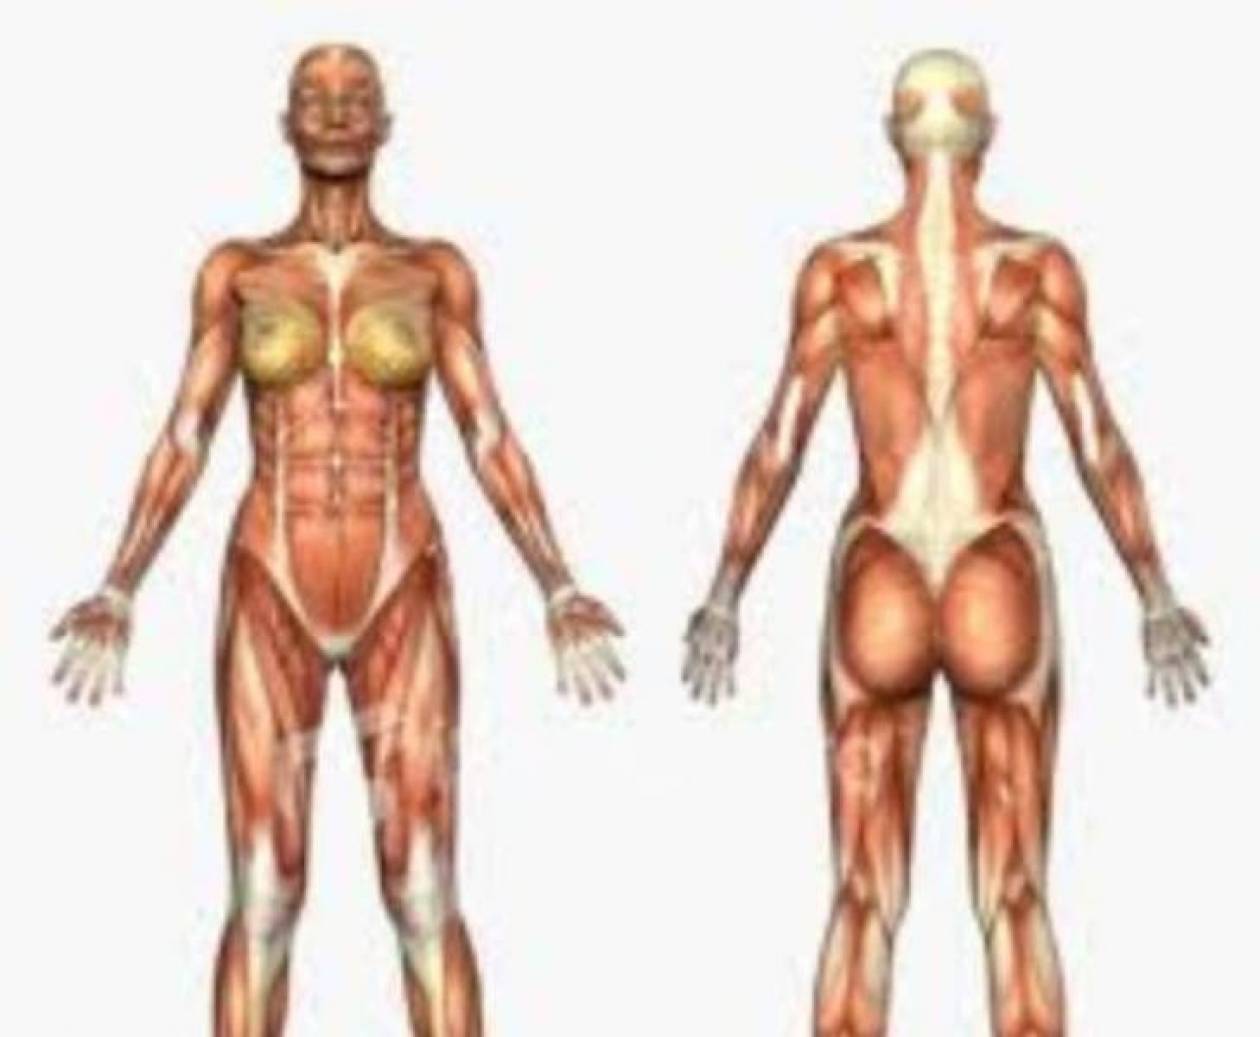 Δείτε τις άγνωστες λειτουργίες του ανθρώπινου σώματος